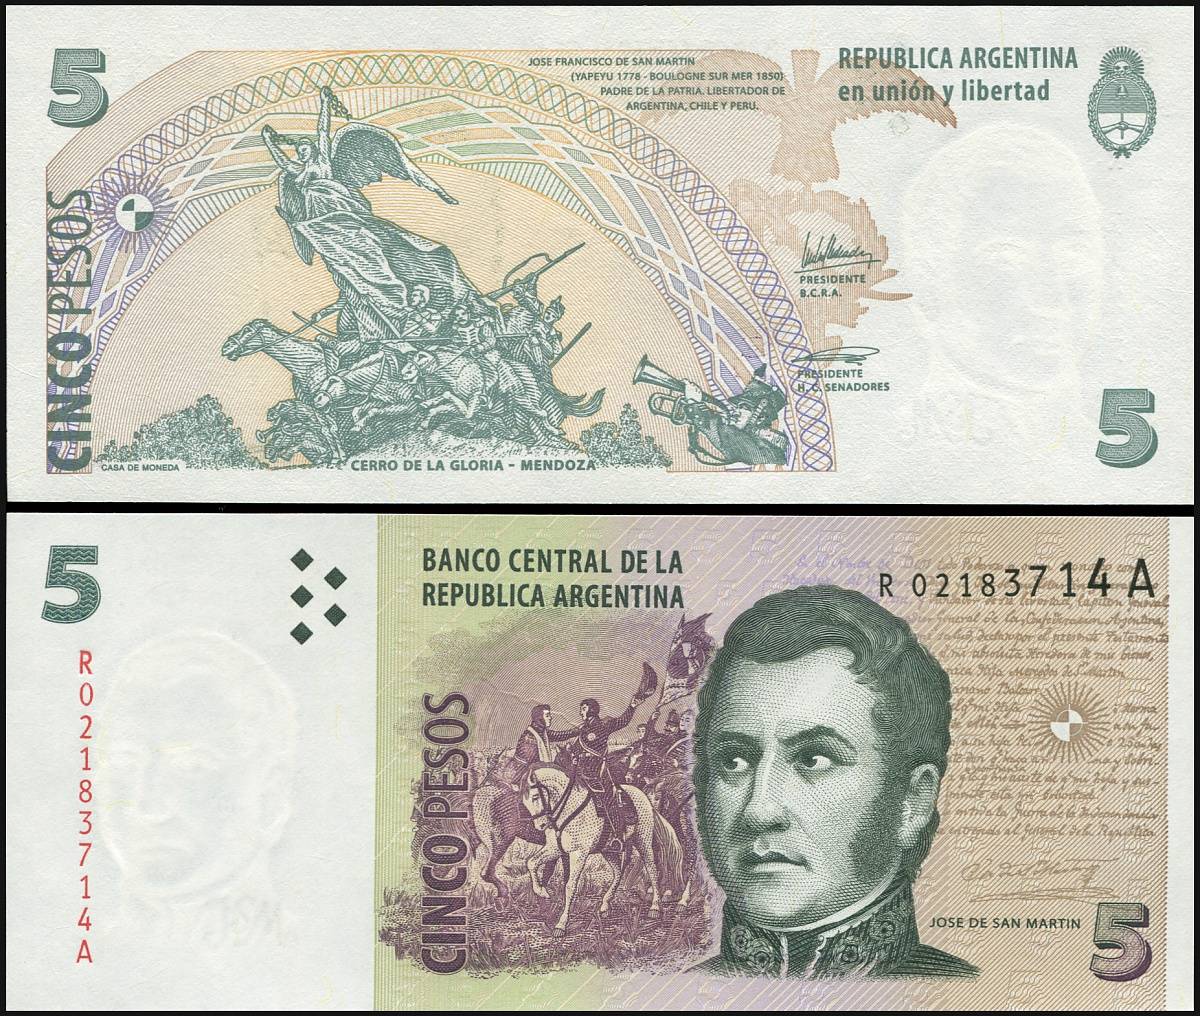 Валюта аргентины – песо